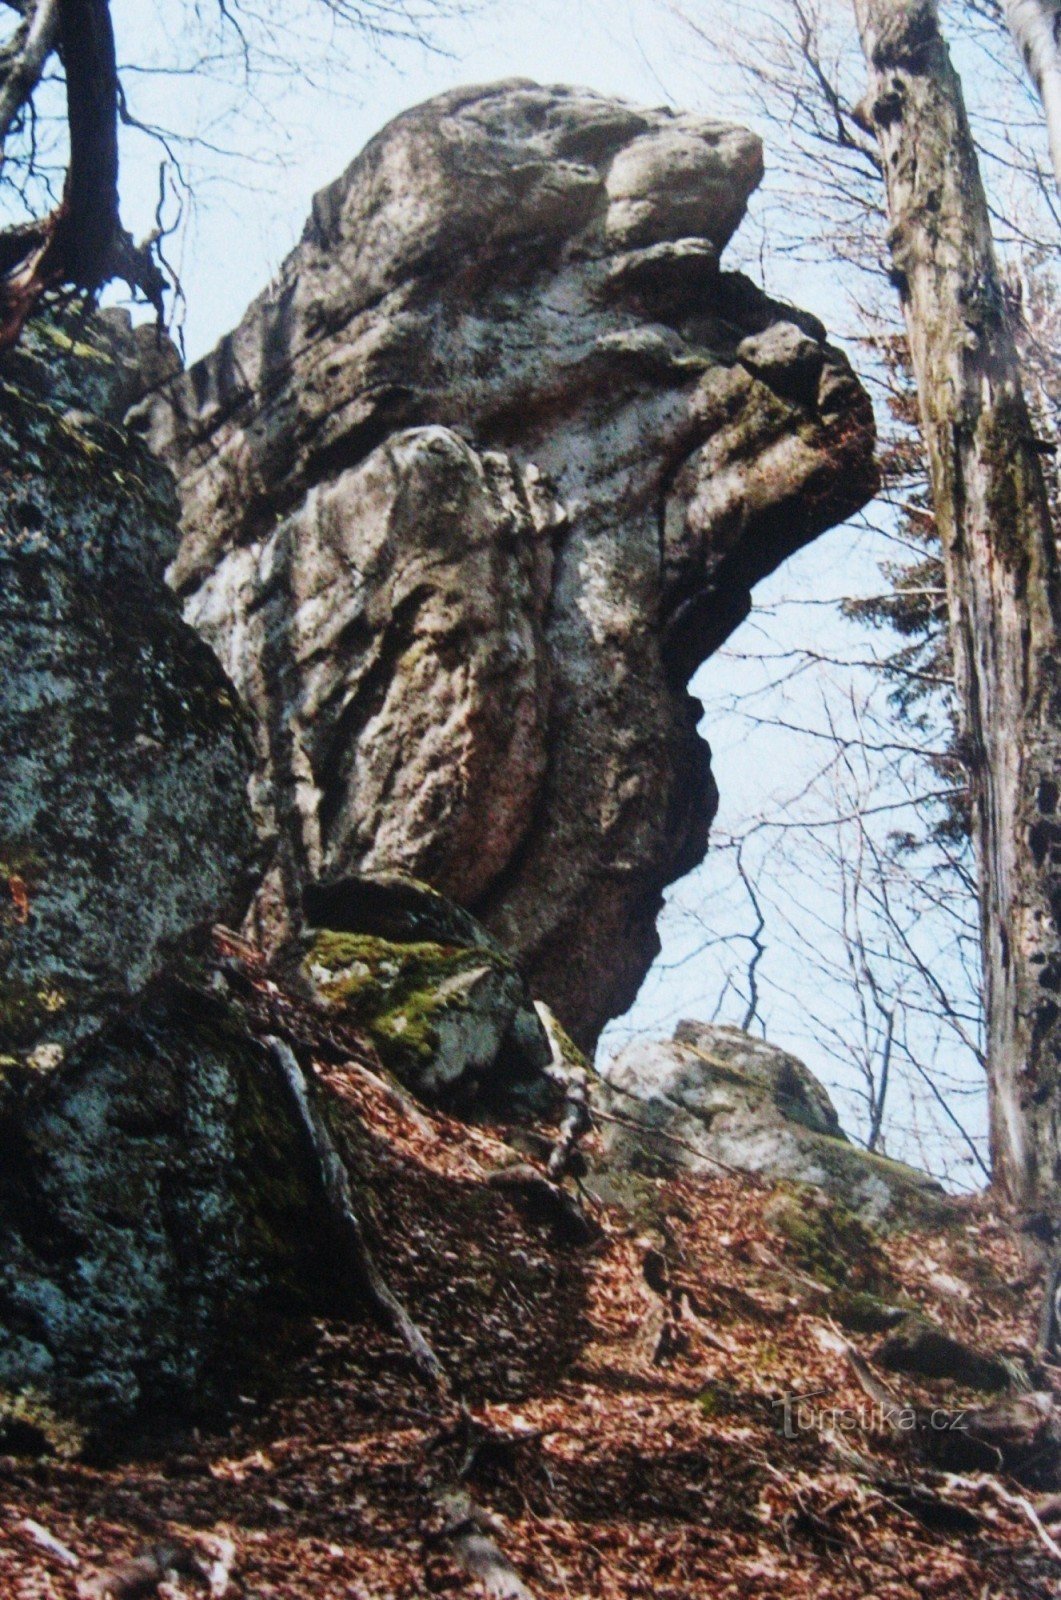 Rocks of Hostýnské vrchy - 12. Čerňava and Smrduta